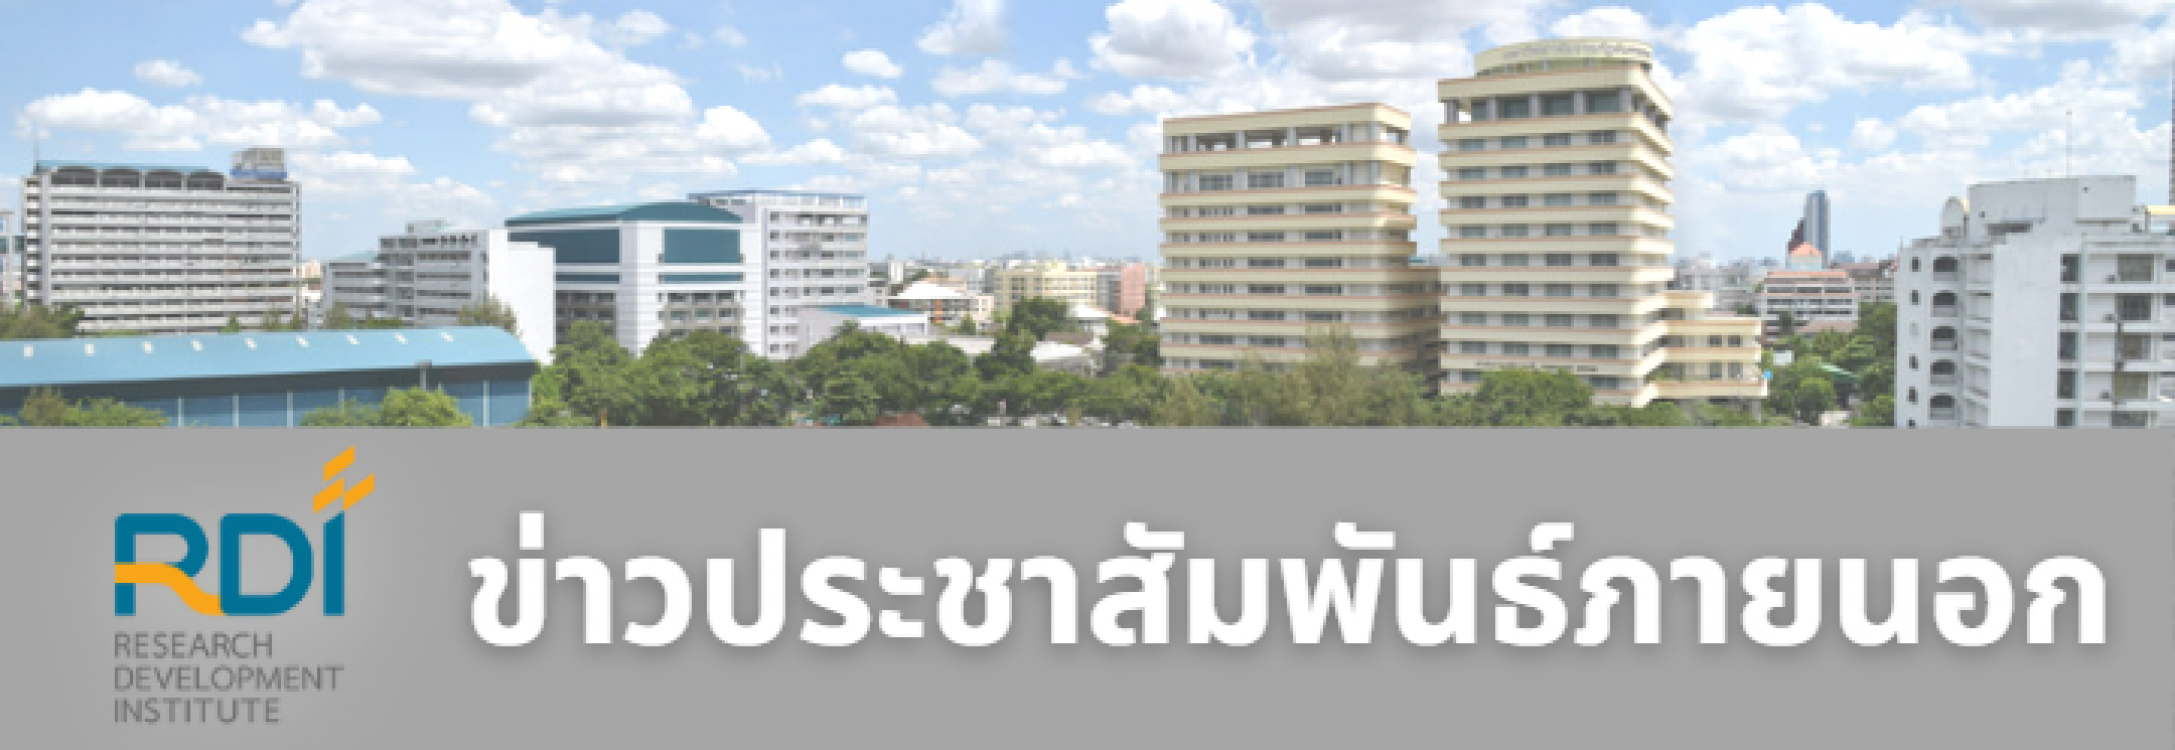 ประกาศการยางแห่งประเทศไทย เรื่อง รับข้อเสนอโครงการวิจัยเพื่อรับทุนสนับสนุนการวิจัยเกี่ยวกับยางพารา ประจำปี 2567